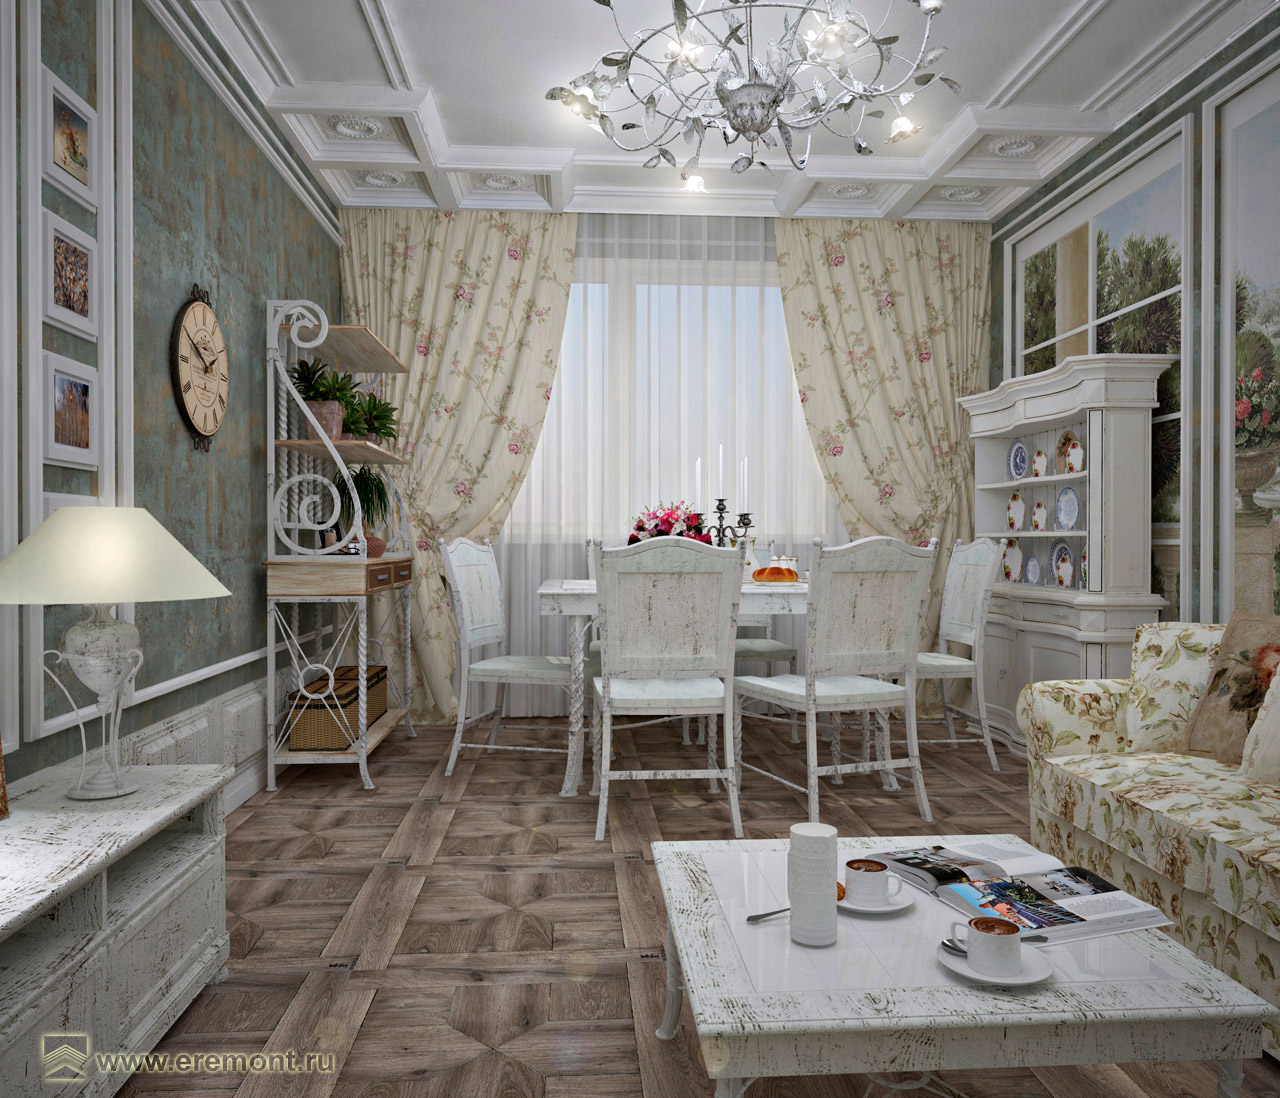 Оформление интерьера гостиной и гостиной-кухни трехкомнатной квартиры в стиле прованс. Фото № 42643.